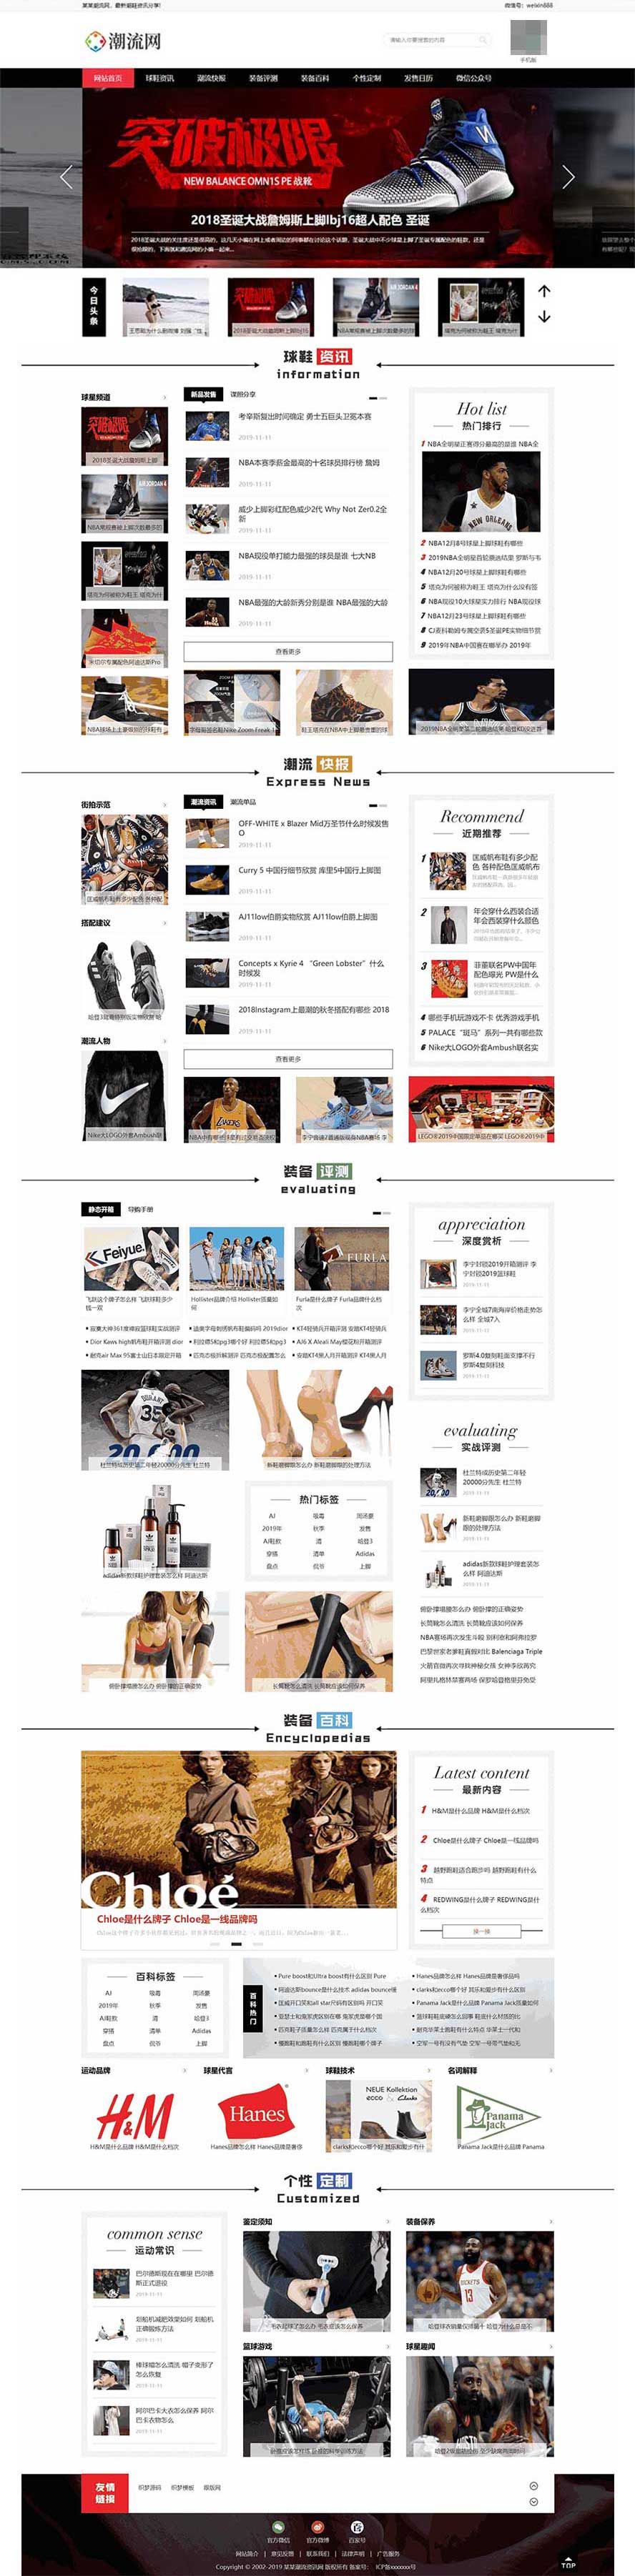 运动球鞋织梦模板,潮流资讯网站源码